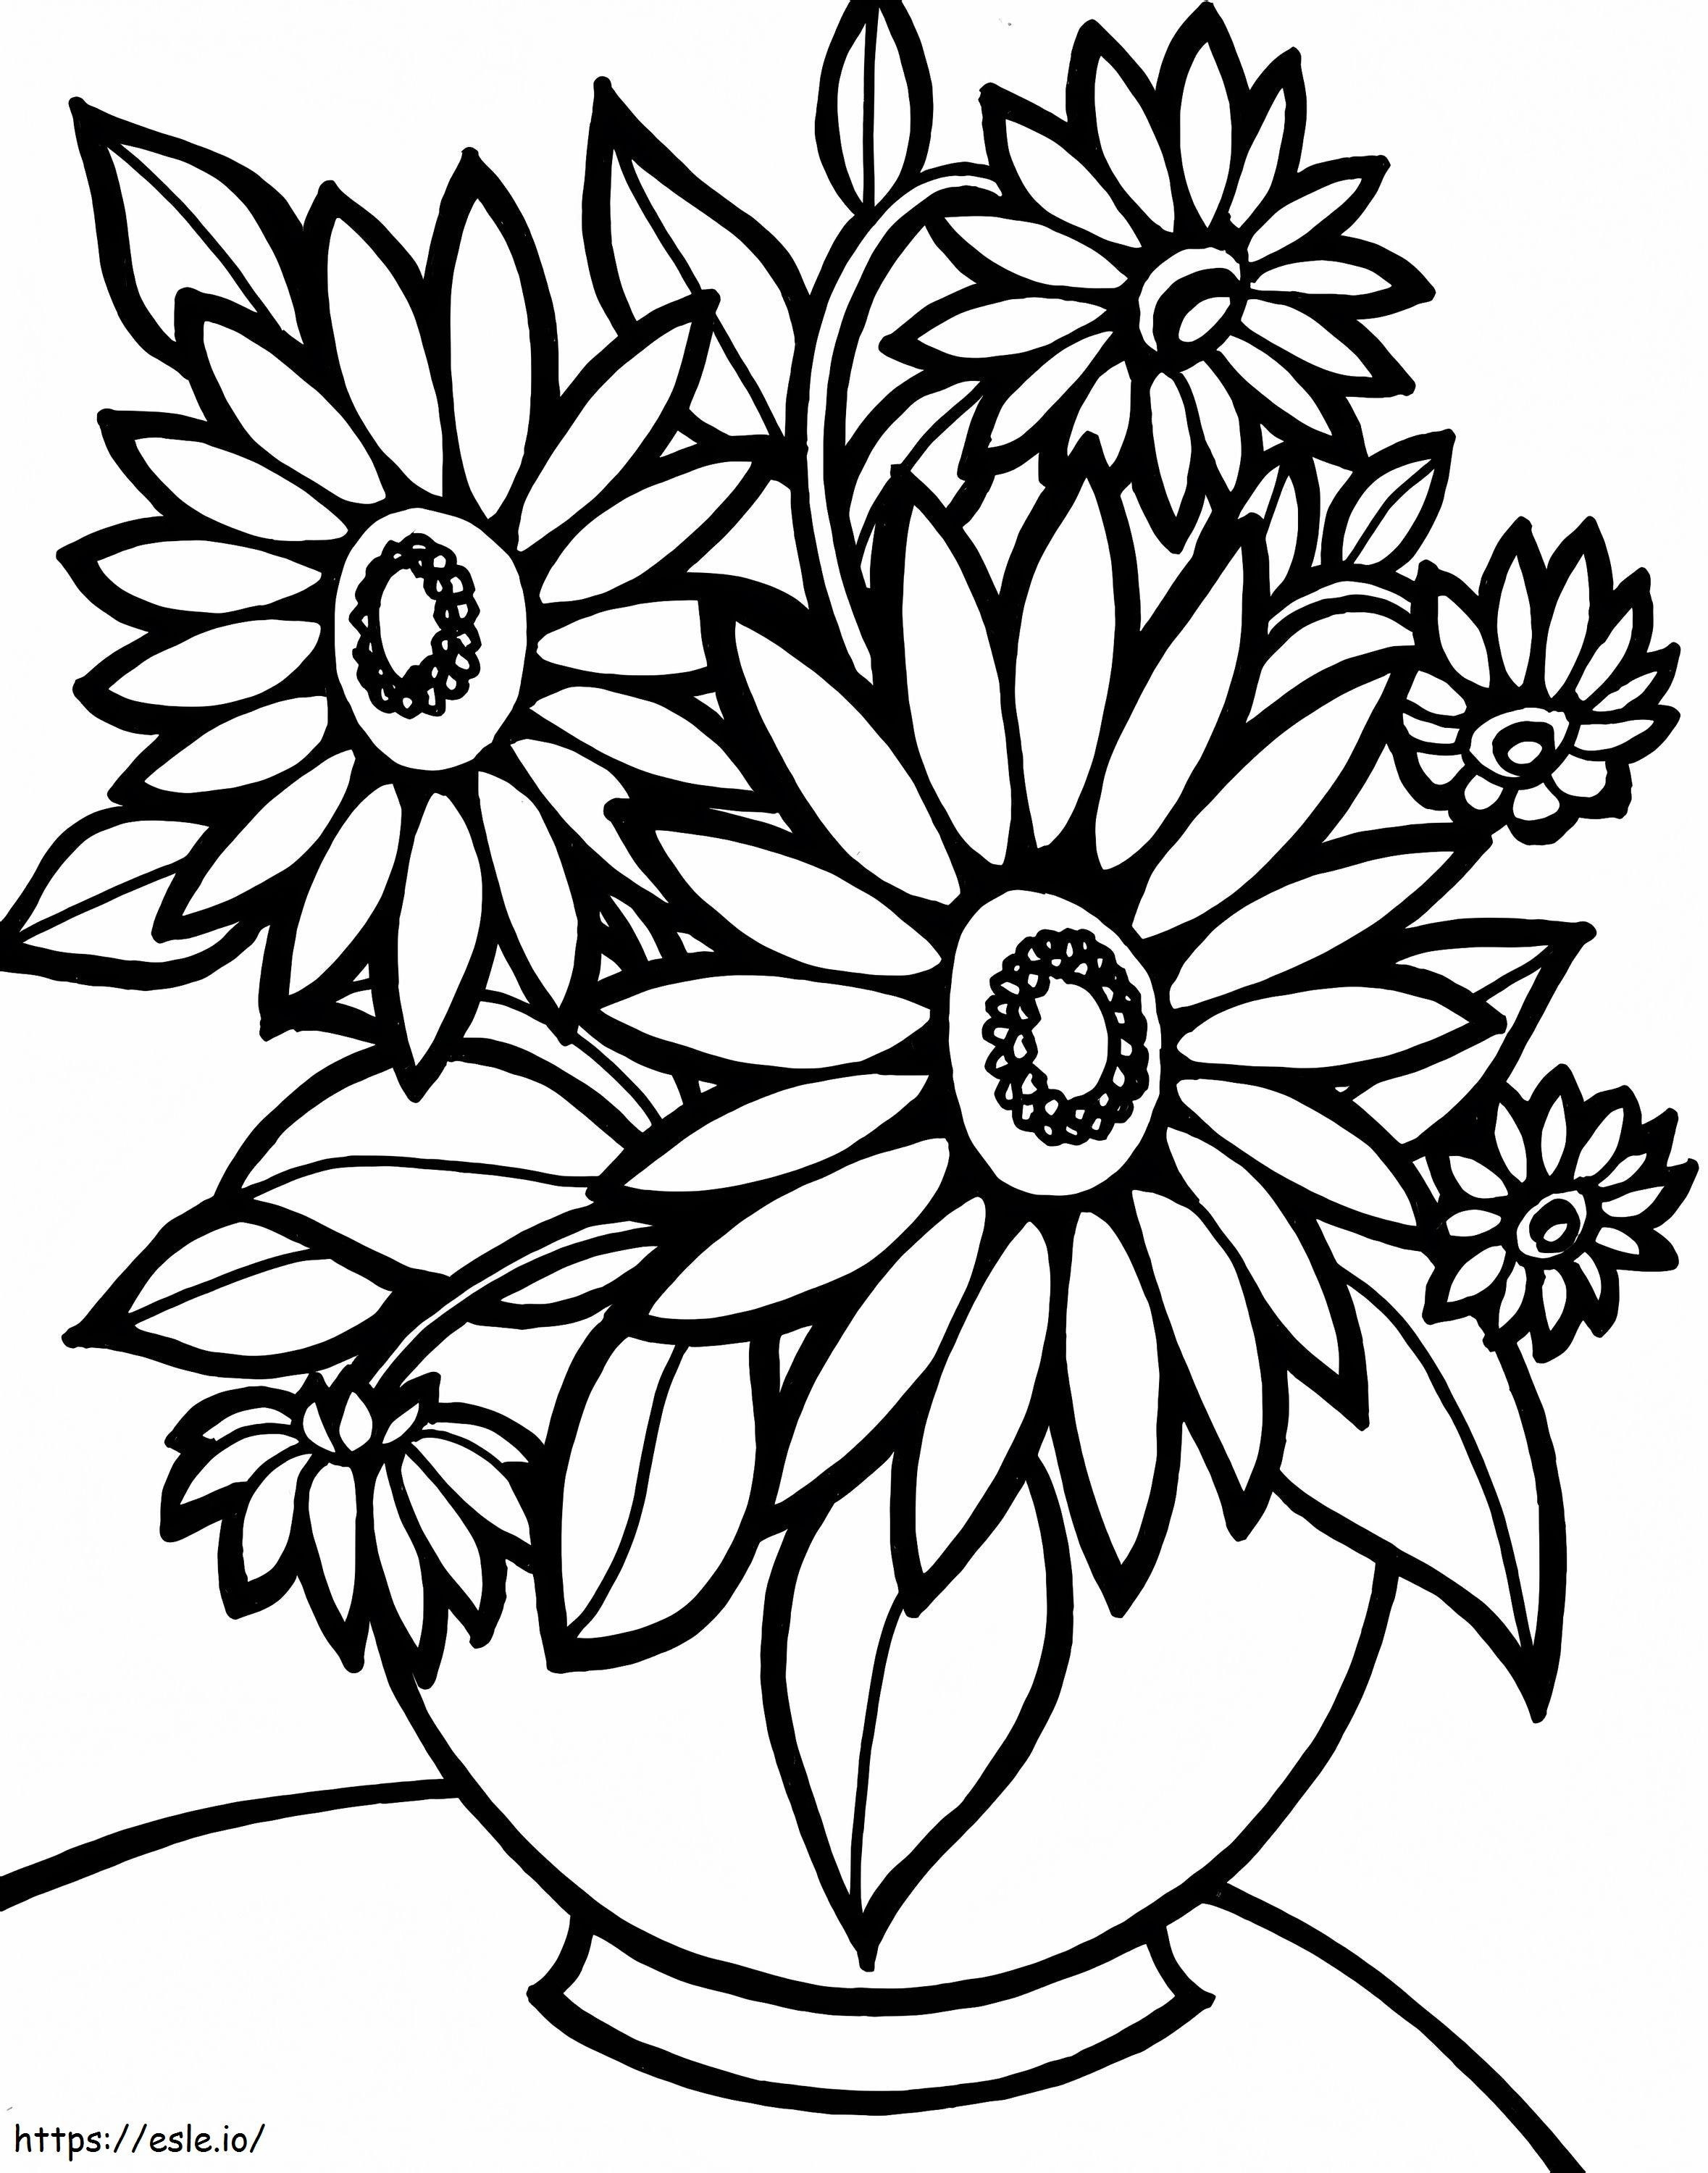 1539917945 Helppo tulostettava kukkaväri, joka on tarkoitettu helposti tulostettavaan lapsille tarkoitettuun kukkaan värityskuva